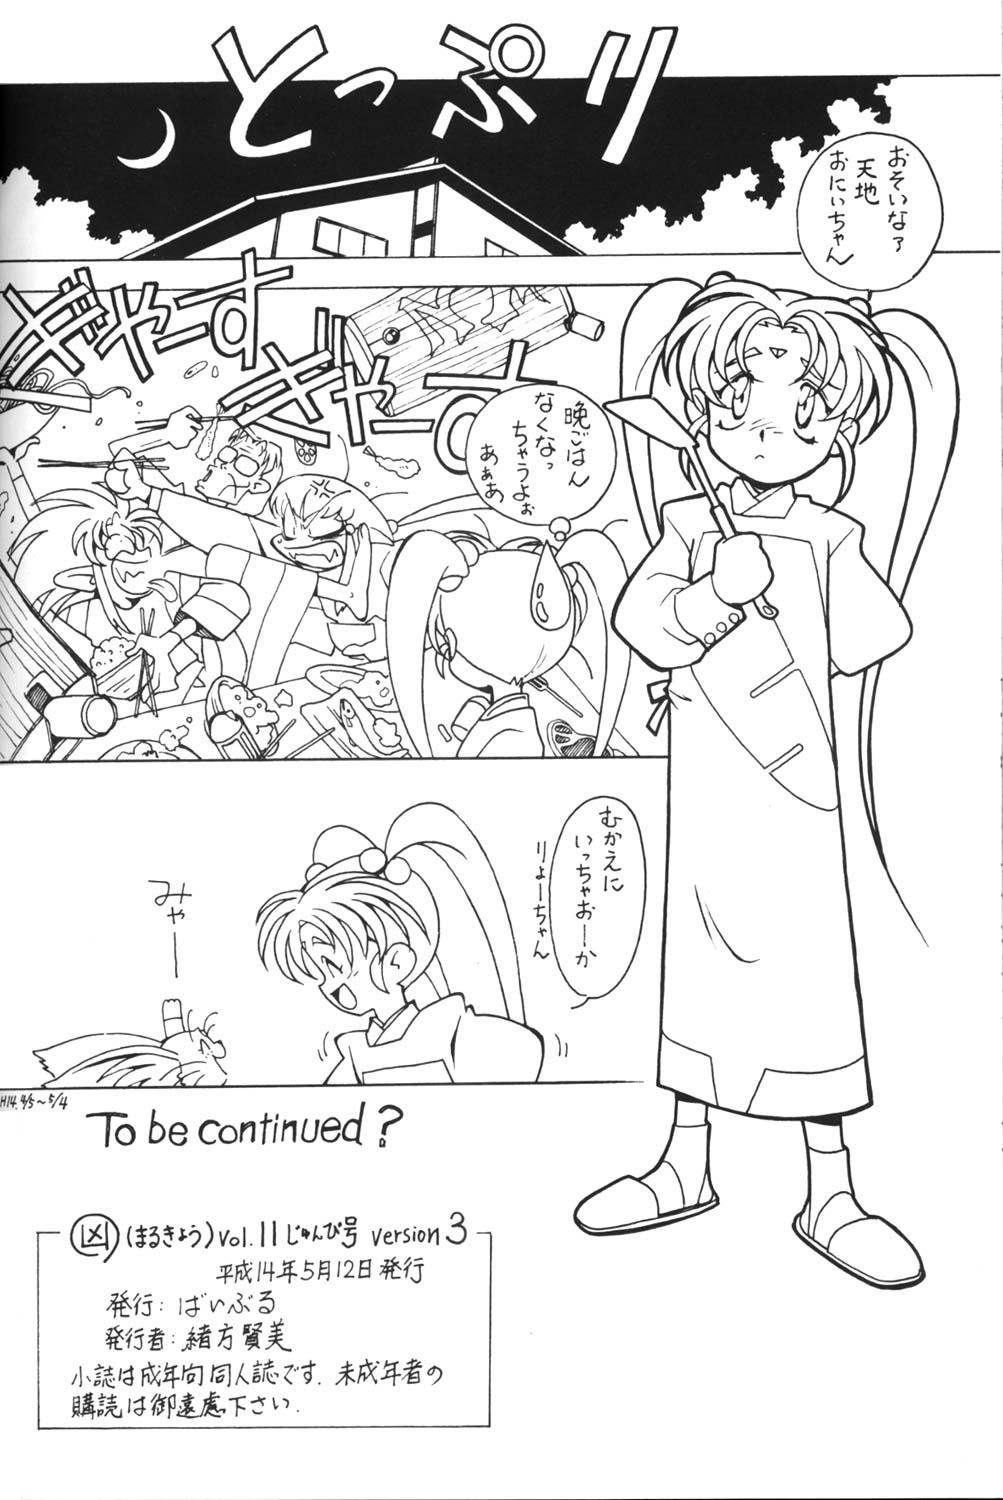 Safada Kyouakuteki Shidou Vol. 11 Junbigou Version 3 - Tenchi muyo Shoplifter - Page 21